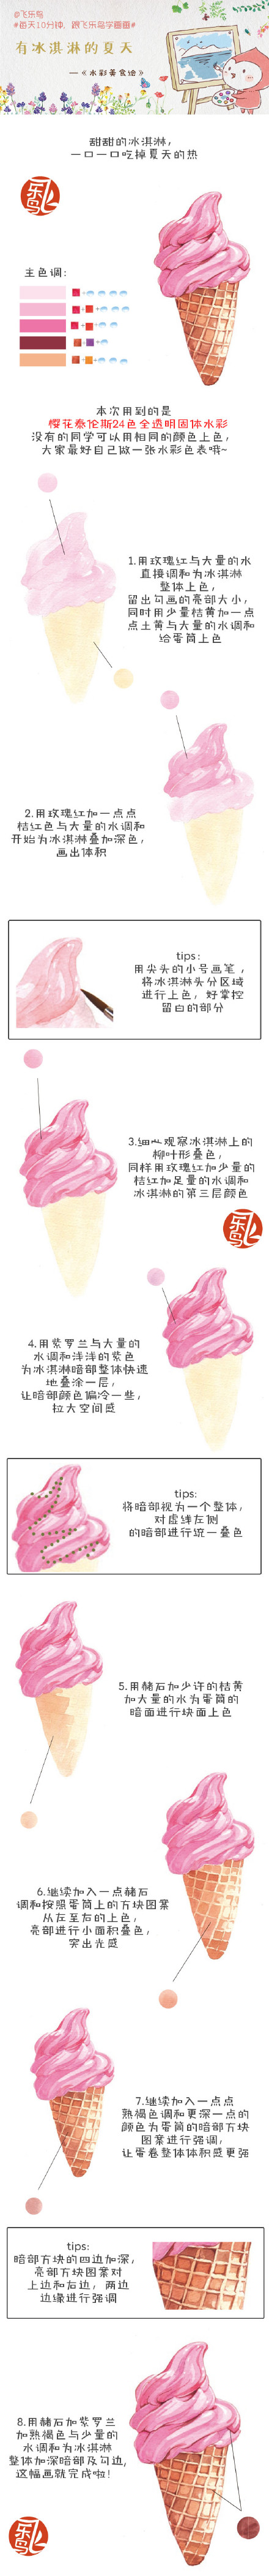 动漫漫画素材
飞乐鸟
水粉 冰淇淋冰激凌画法教程